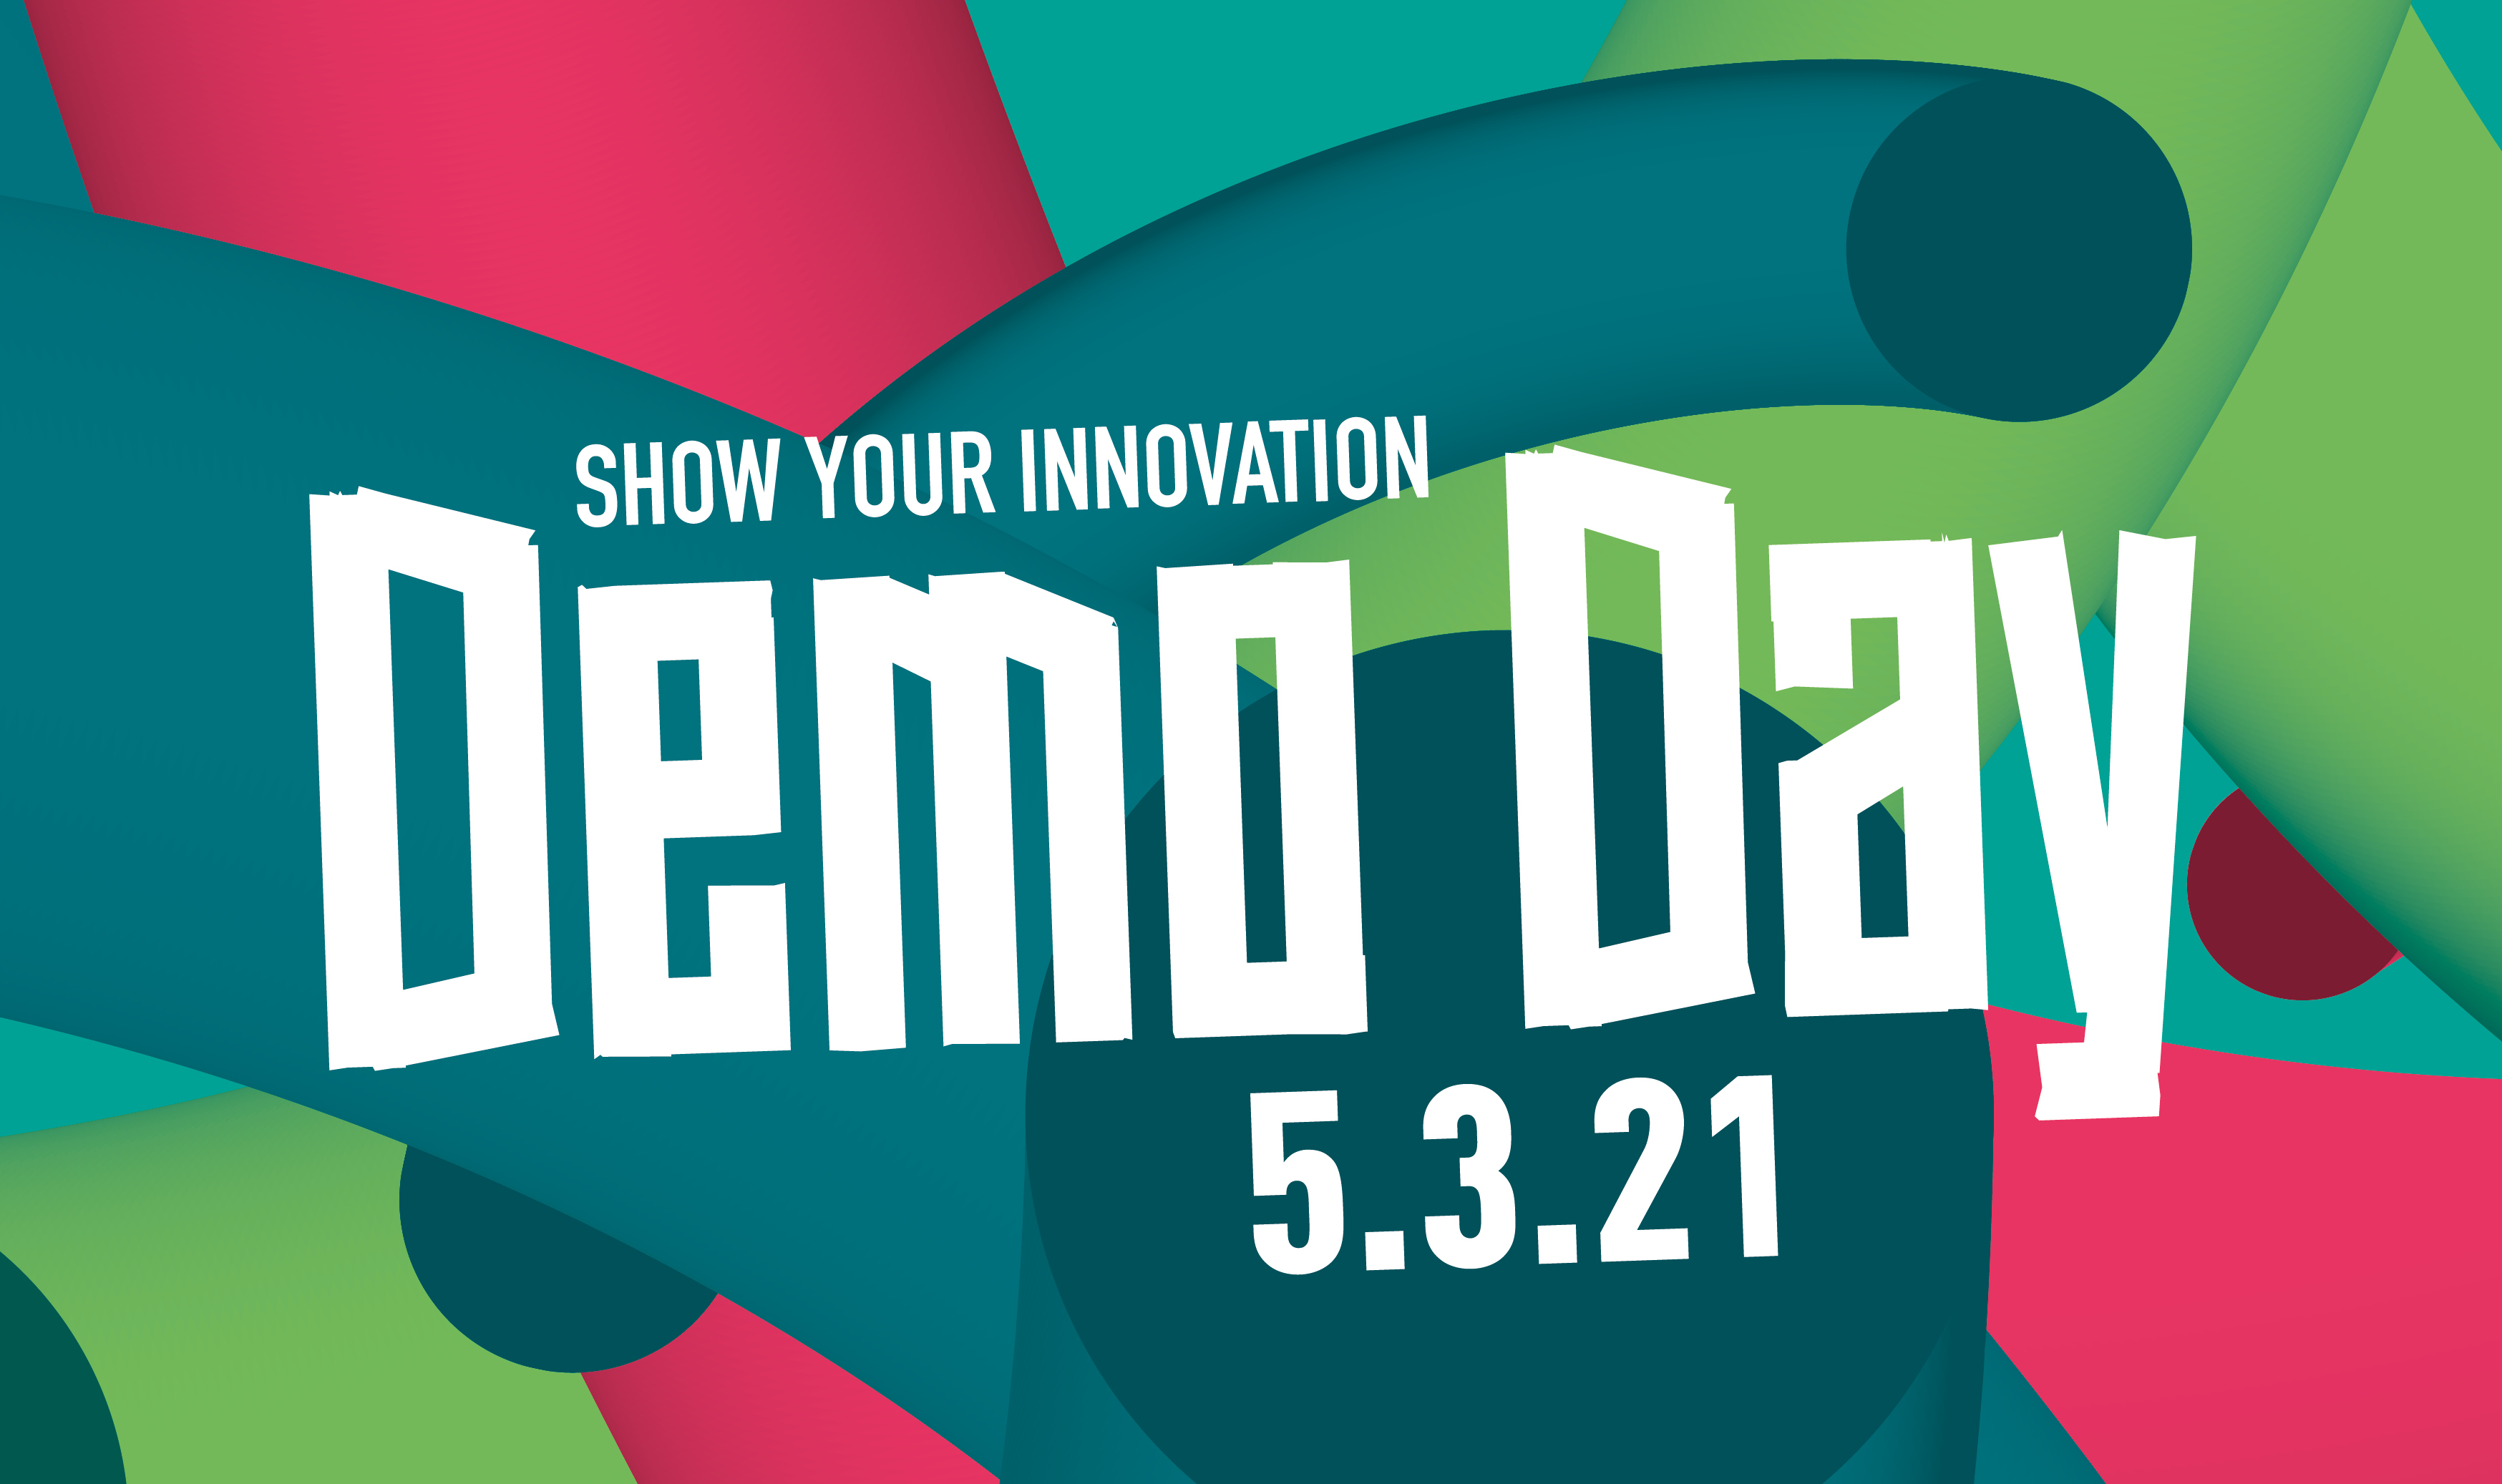 Visual Demo Day, bunter Hintergrund in petrol, grün und pink mit der Aufschrift "Demo Day, show your innovation, 5.3.21""